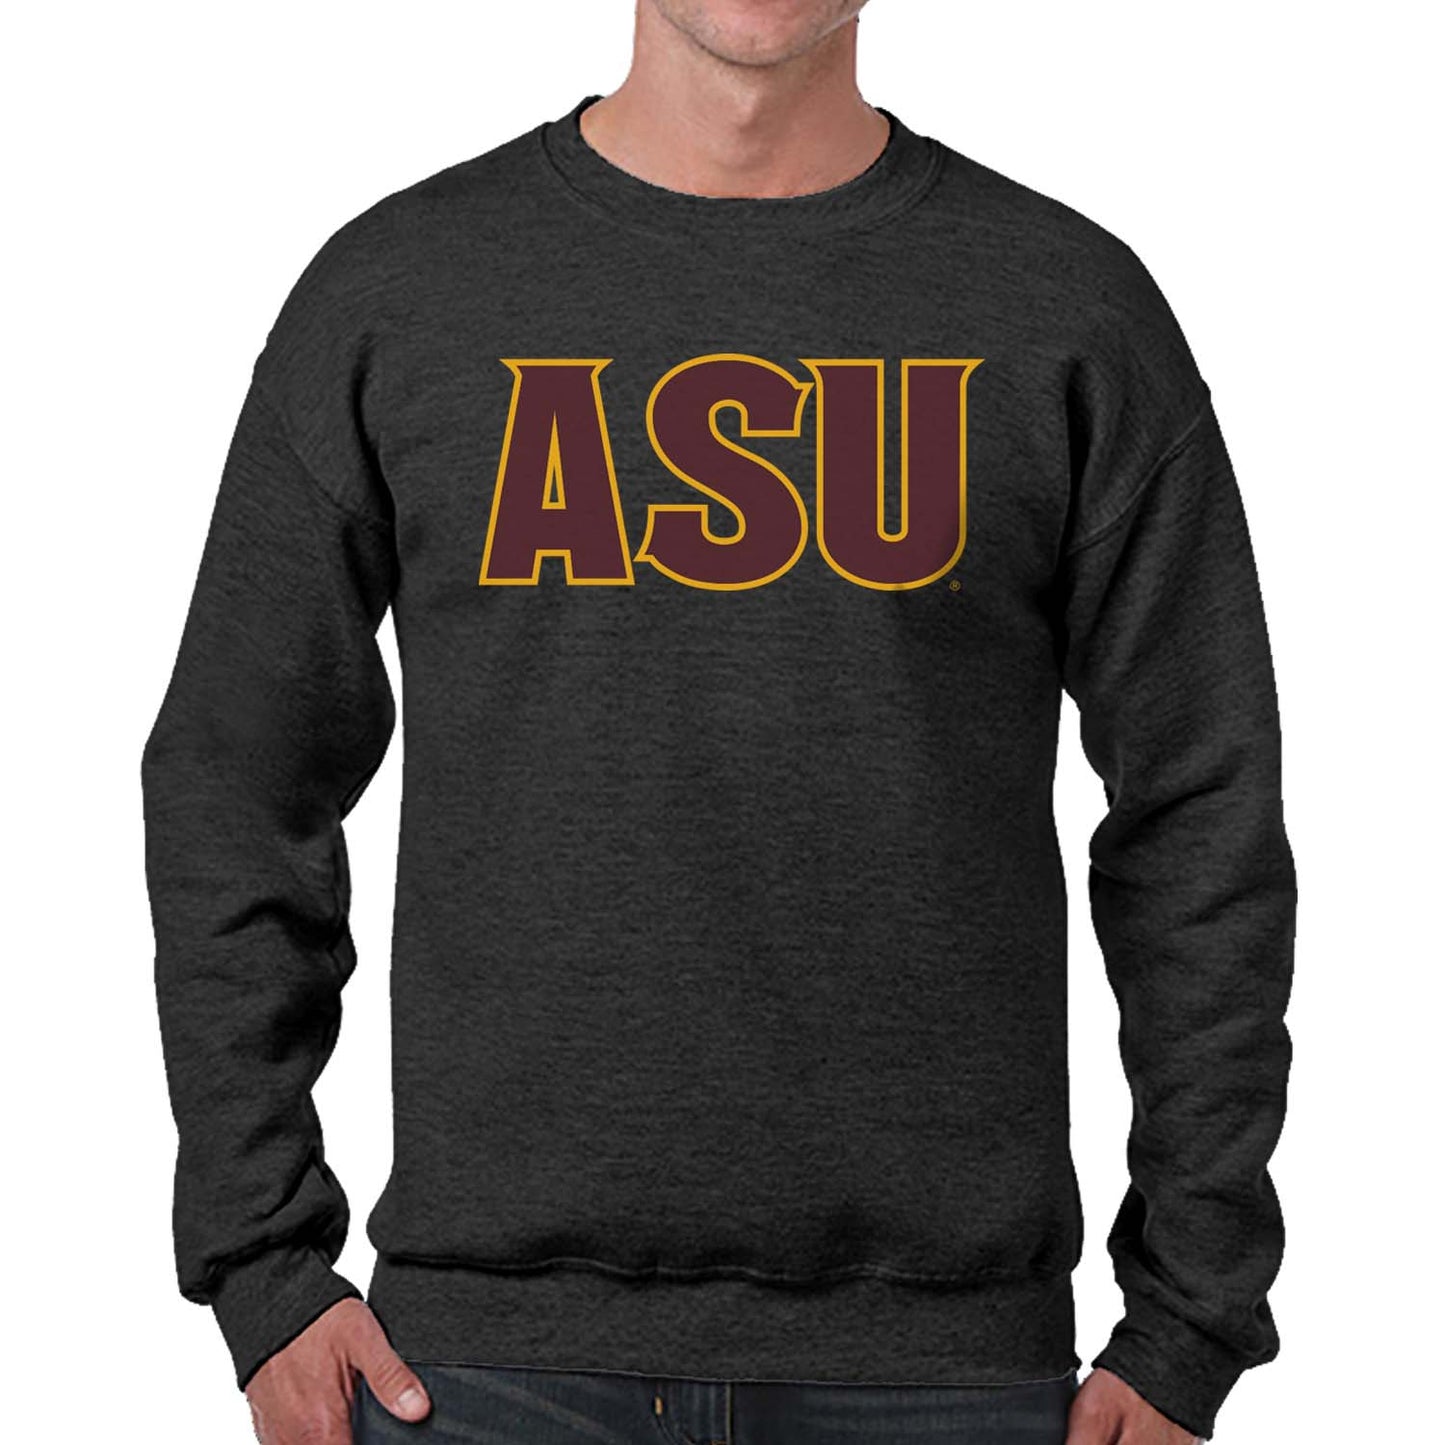 Arizona State Sun Devils NCAA Adult Charcoal Crewneck Fleece Sweatshirt - Charcoal